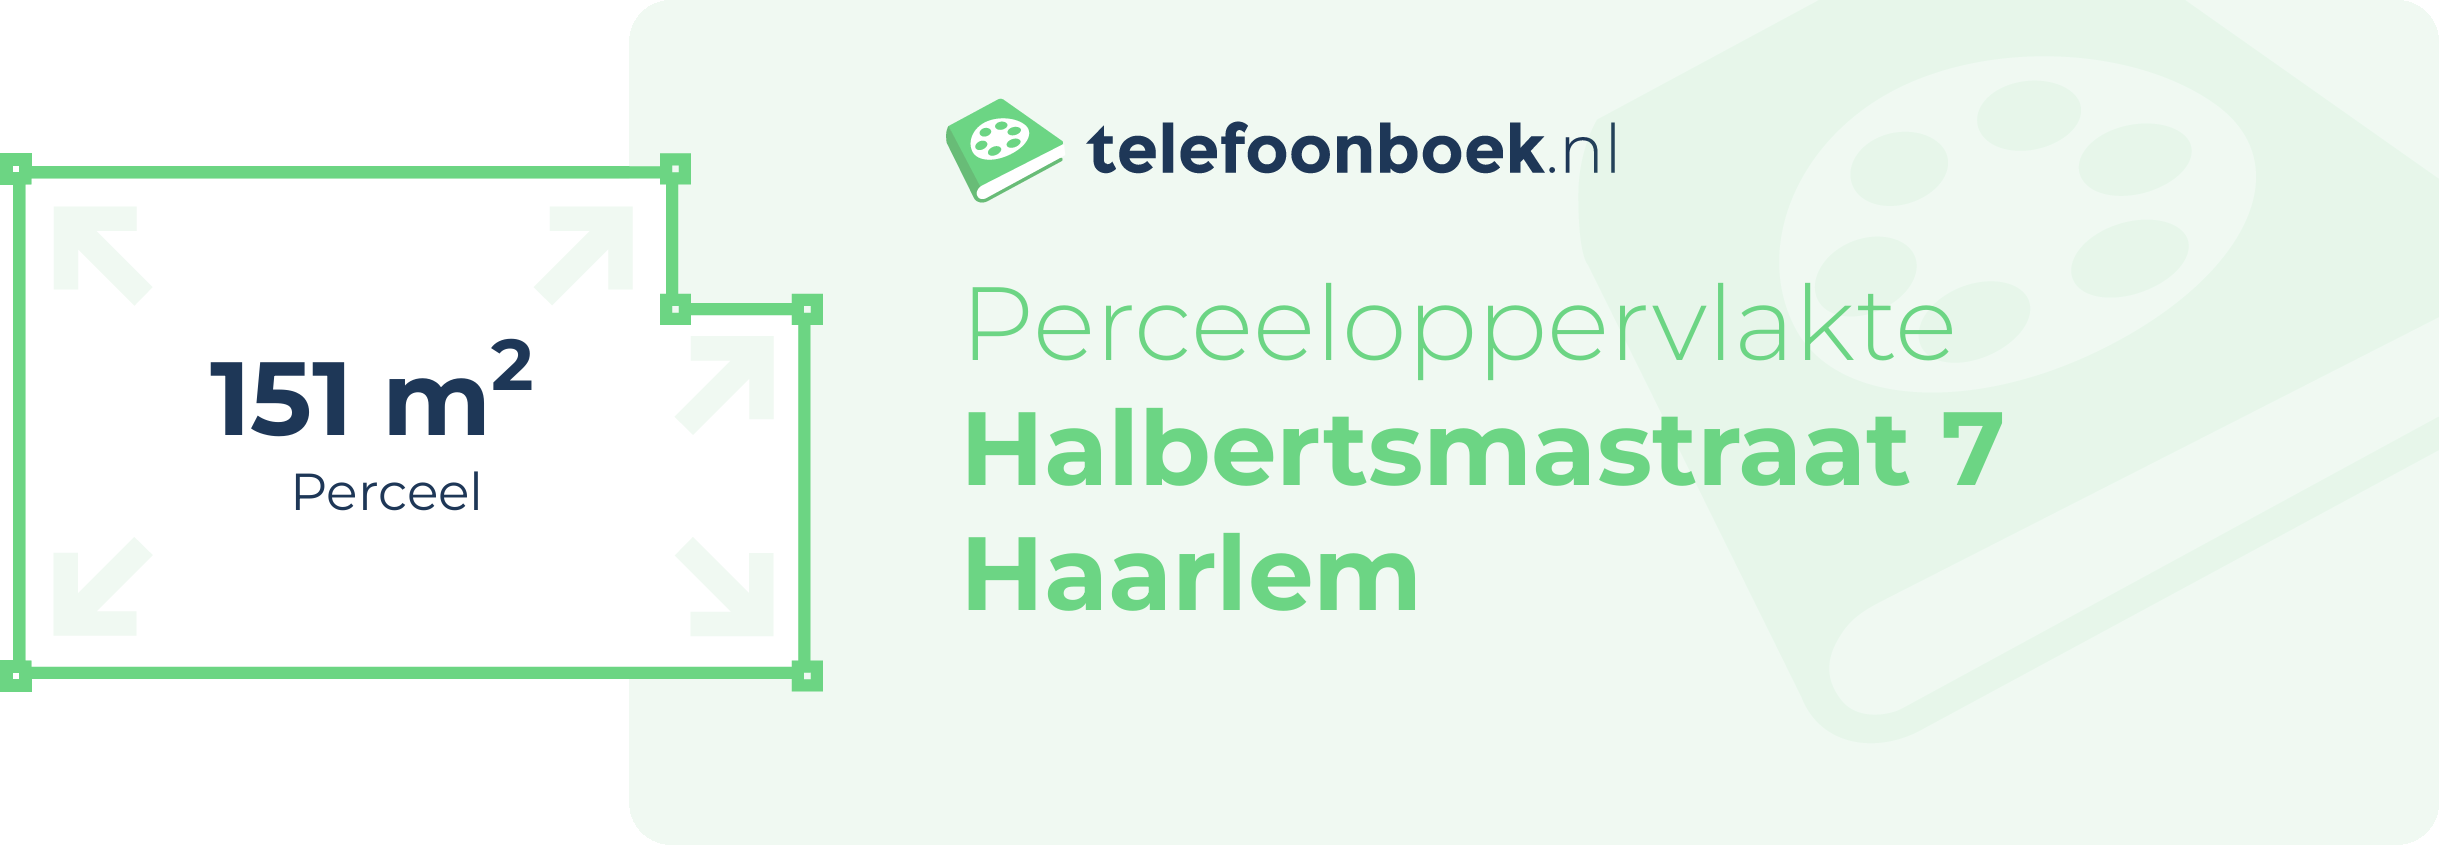 Perceeloppervlakte Halbertsmastraat 7 Haarlem